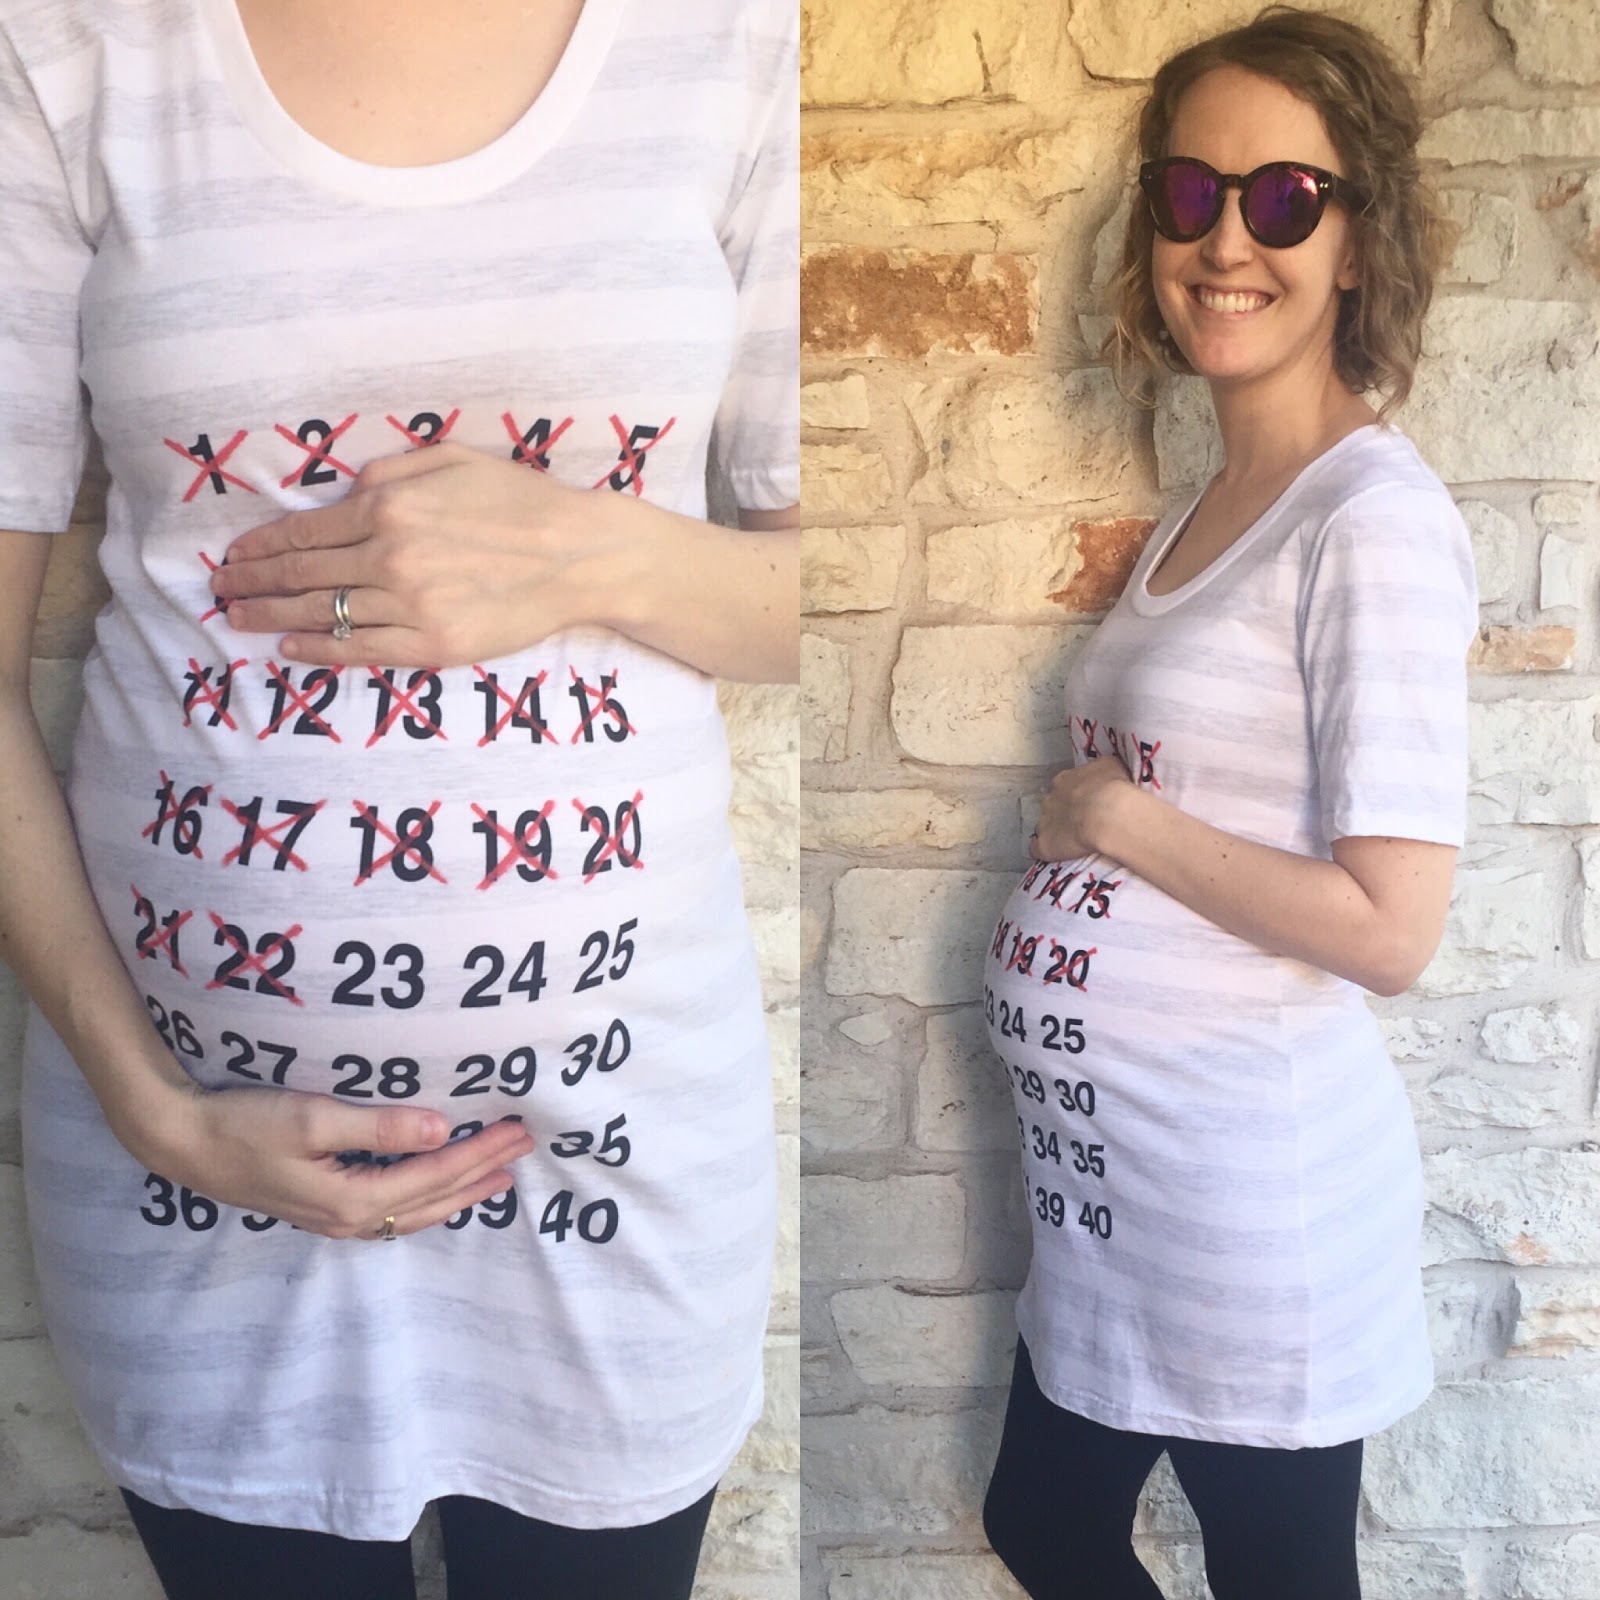 23 неделя отзывы. Животик на 23 неделе беременности. Беременность тройней фото живота по неделям. Календарь двойняшек беременности. Беременные тройней фото животиков.